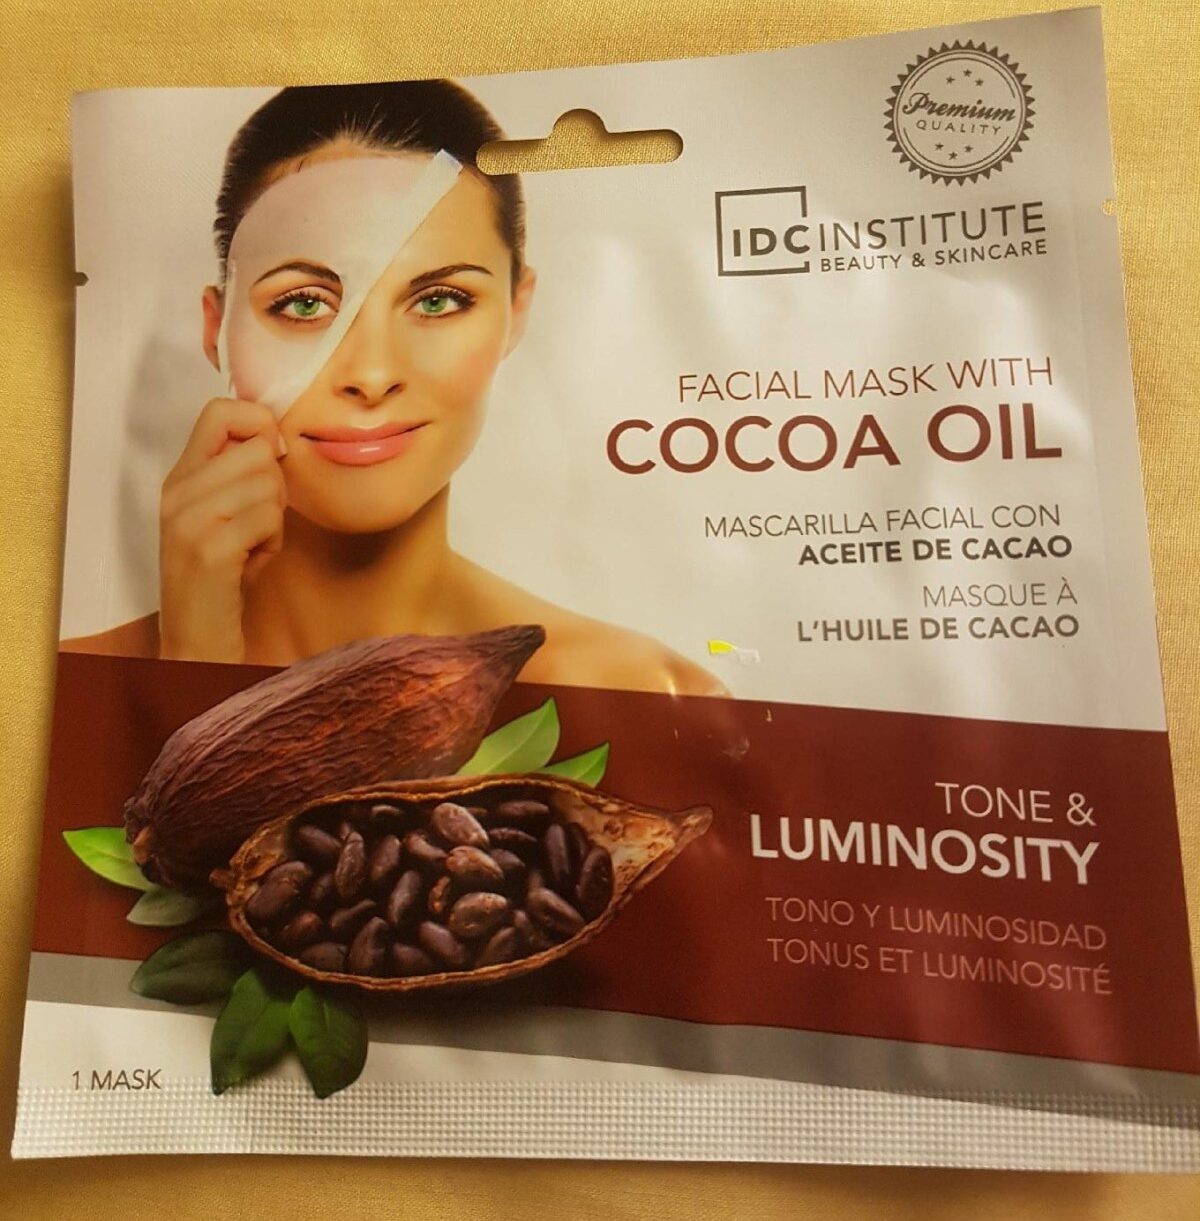 Masque à l'huile de cacao - Product - fr